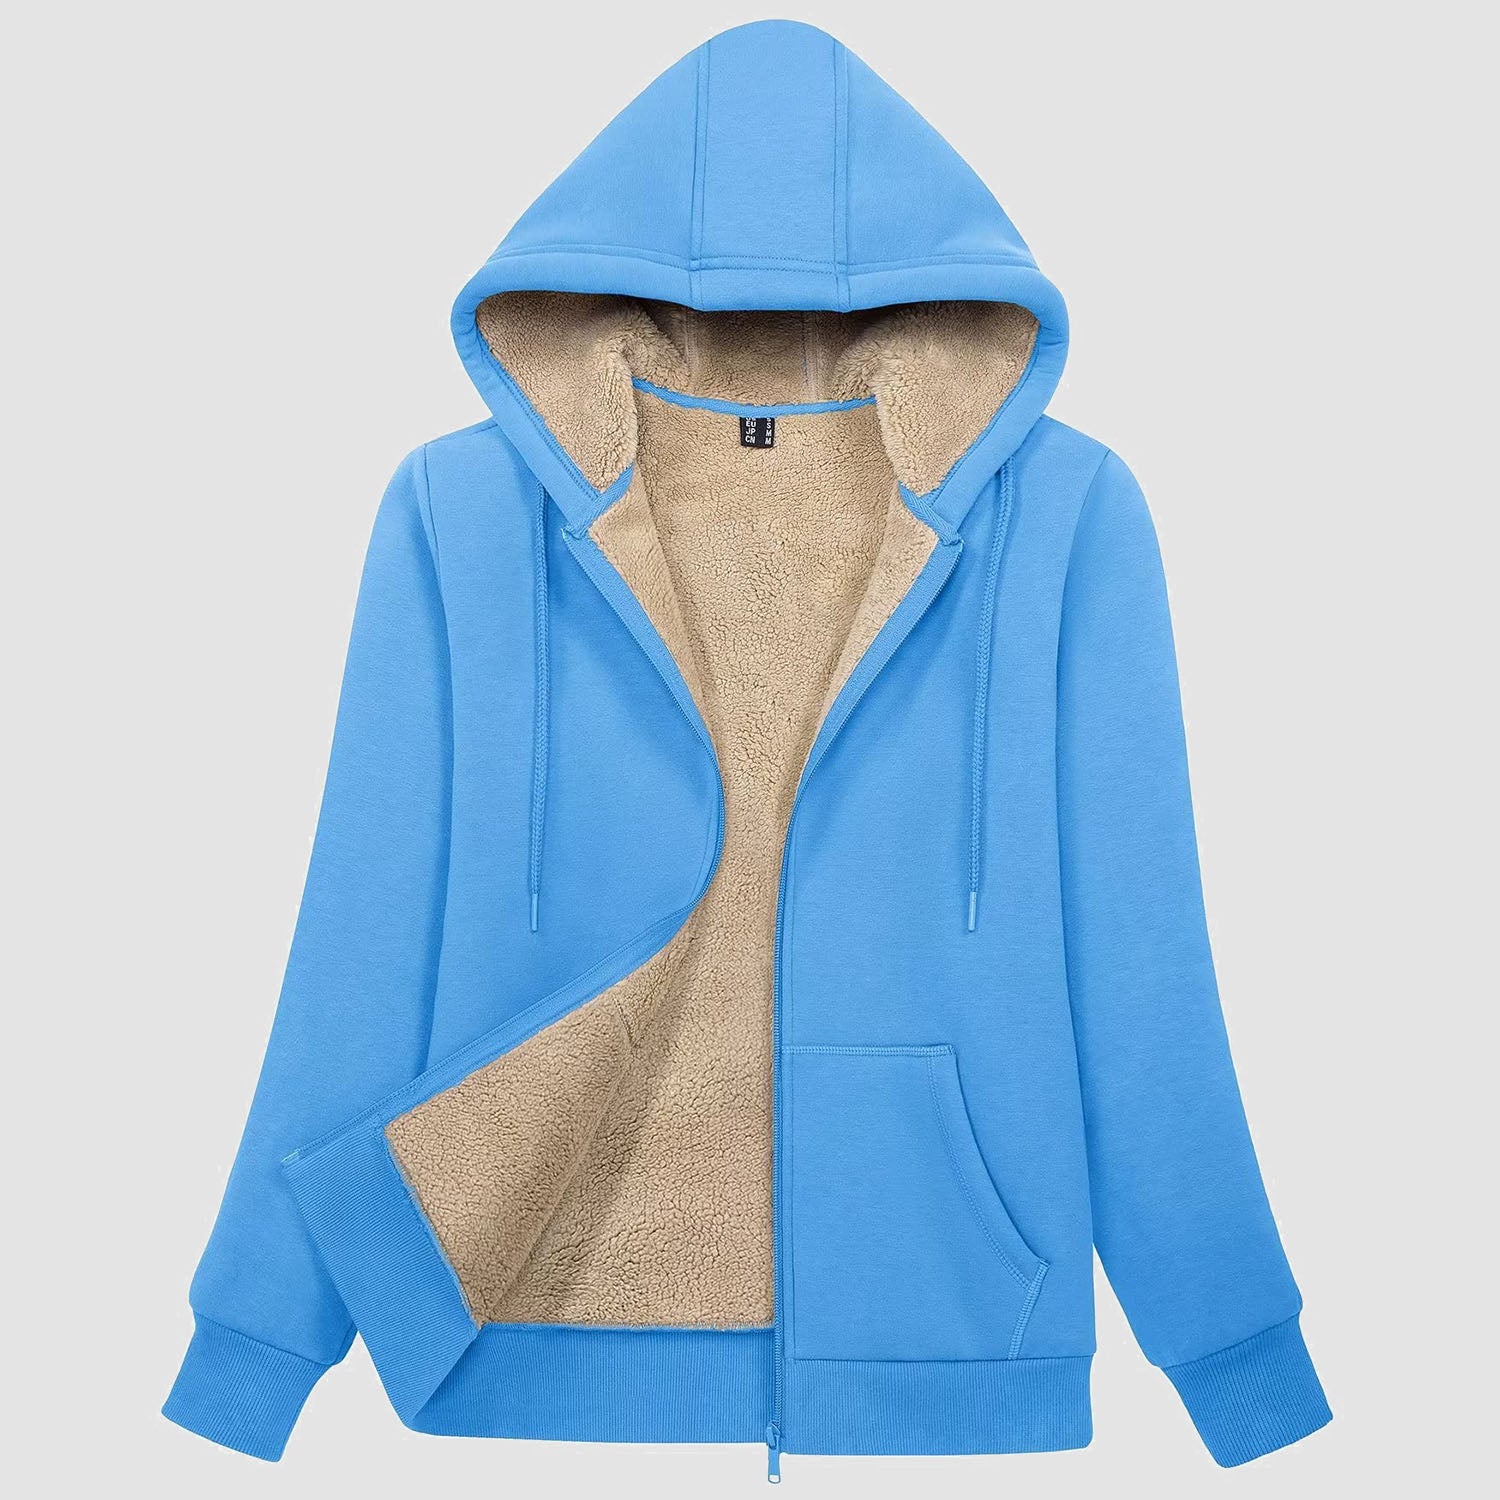 Womens Zip Up Hoodie Sherpa Lined Fleece Jacket Winter Warm Jacket